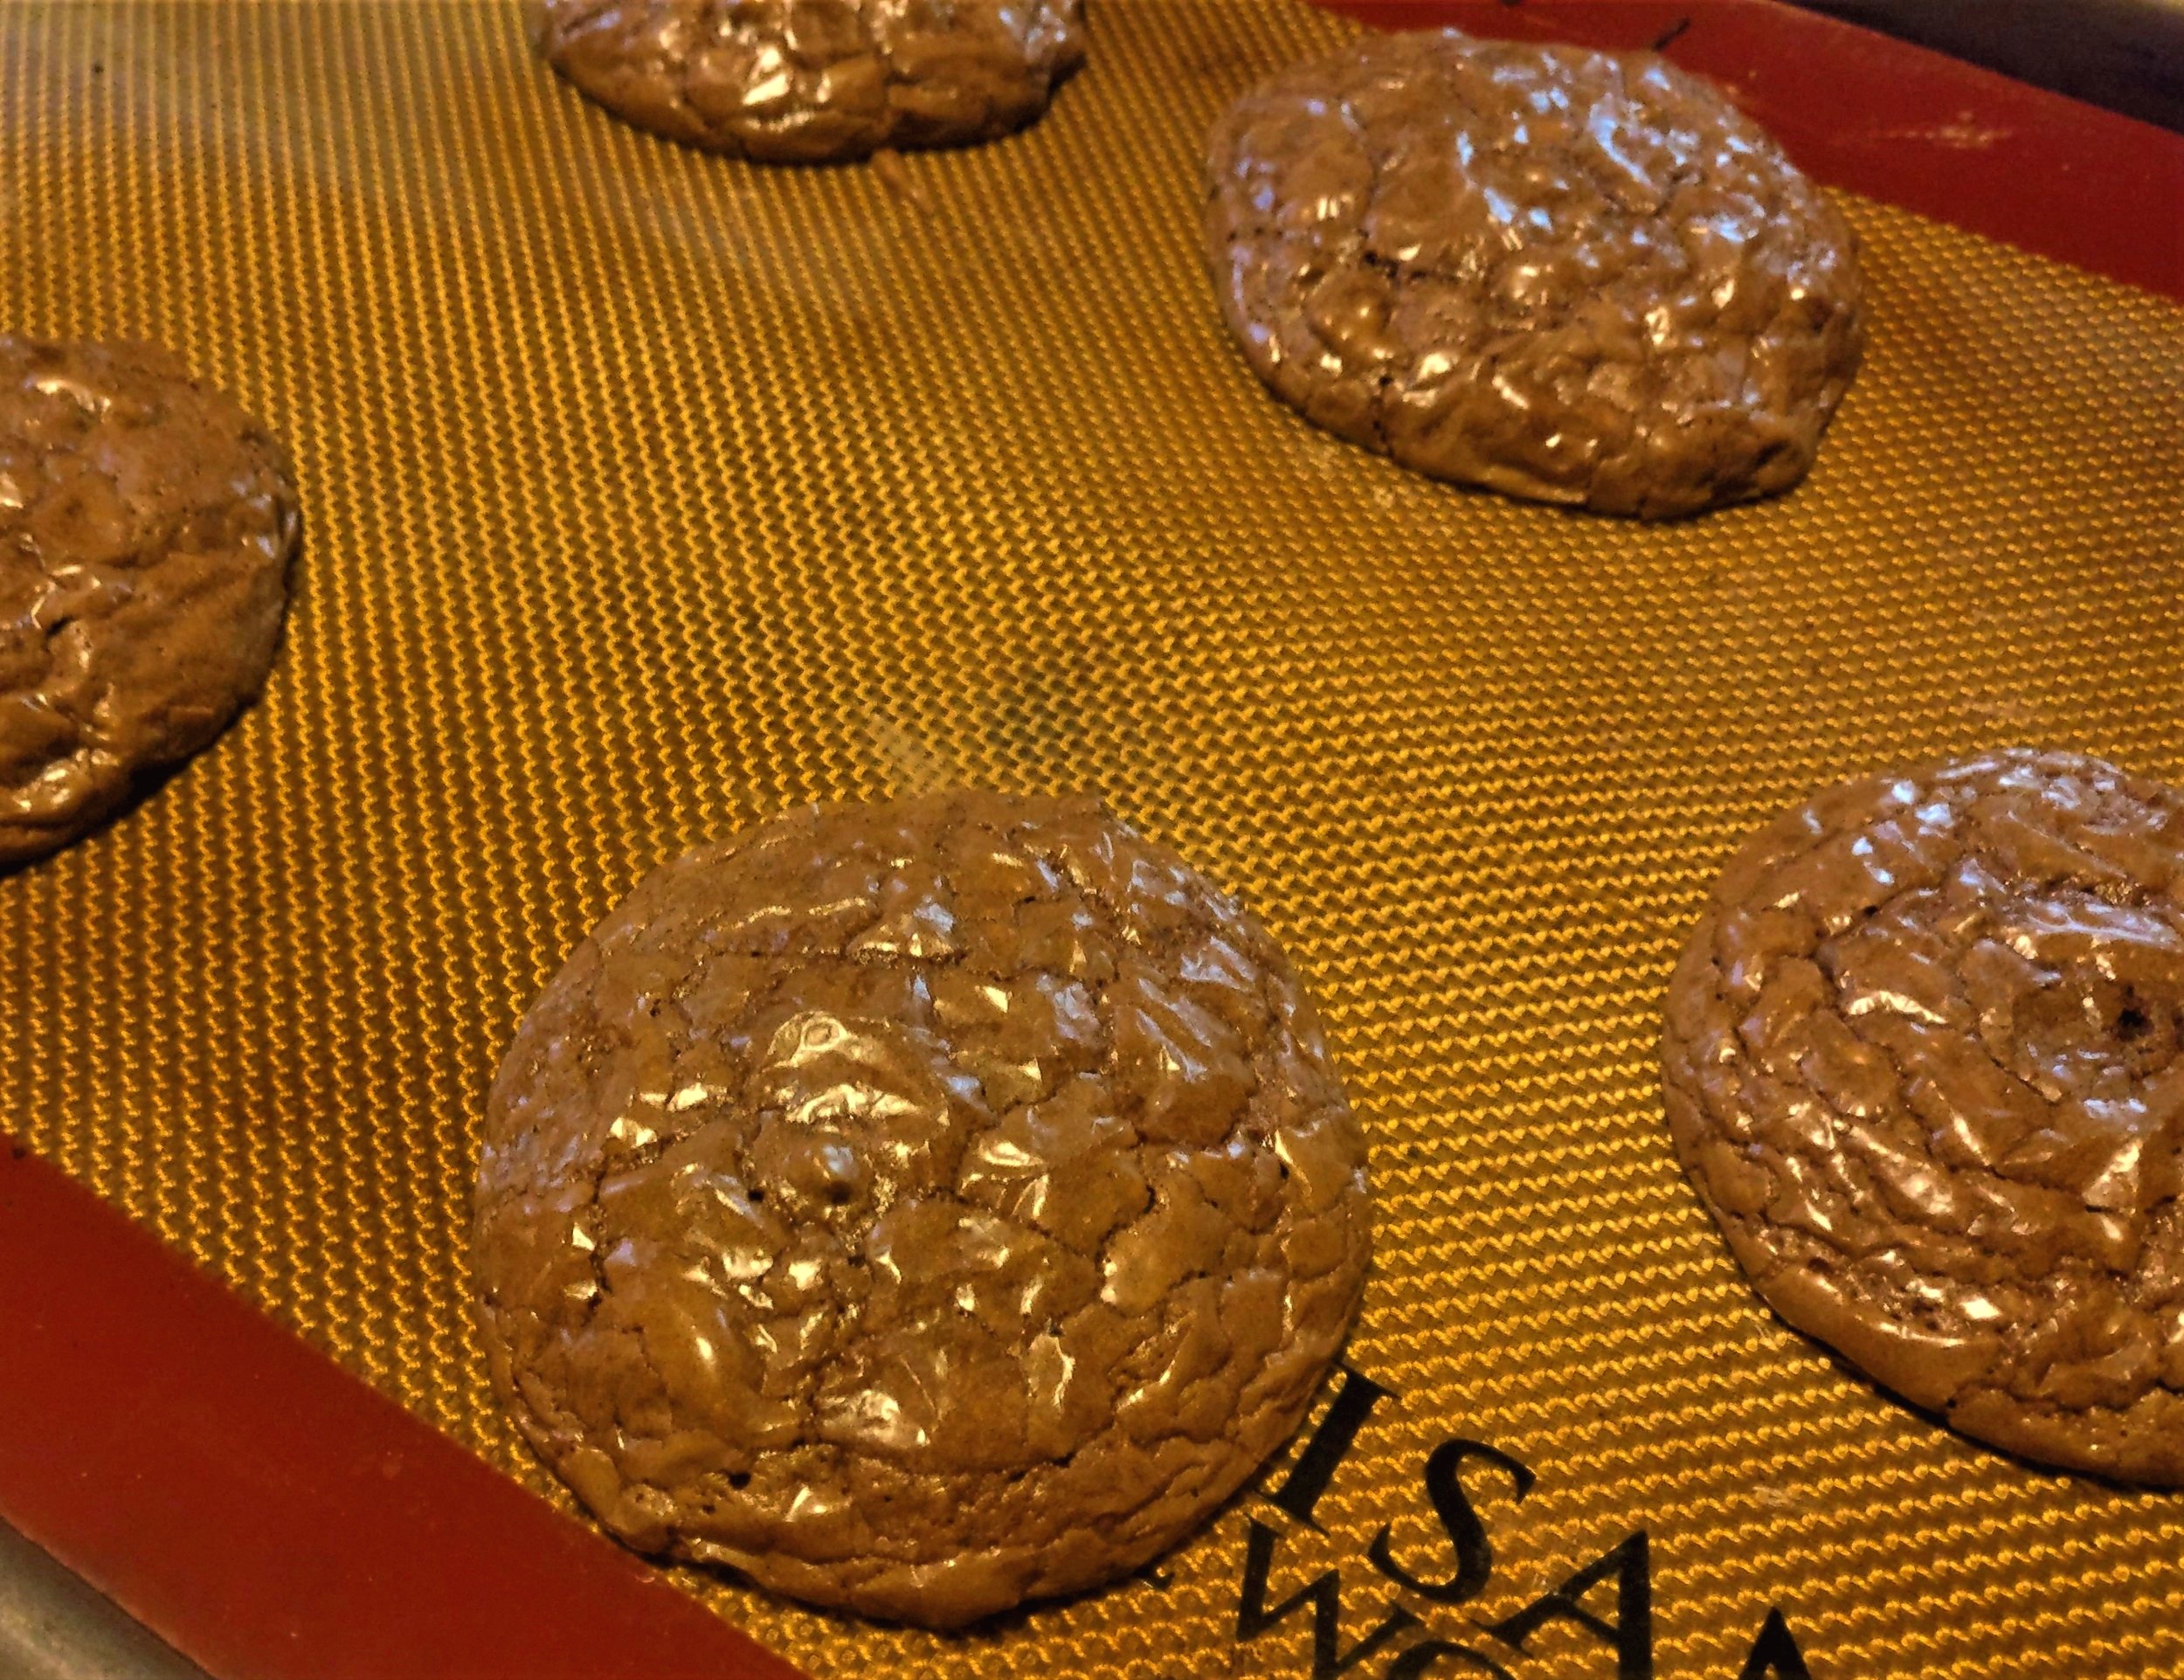 Warm Chocolate cookies